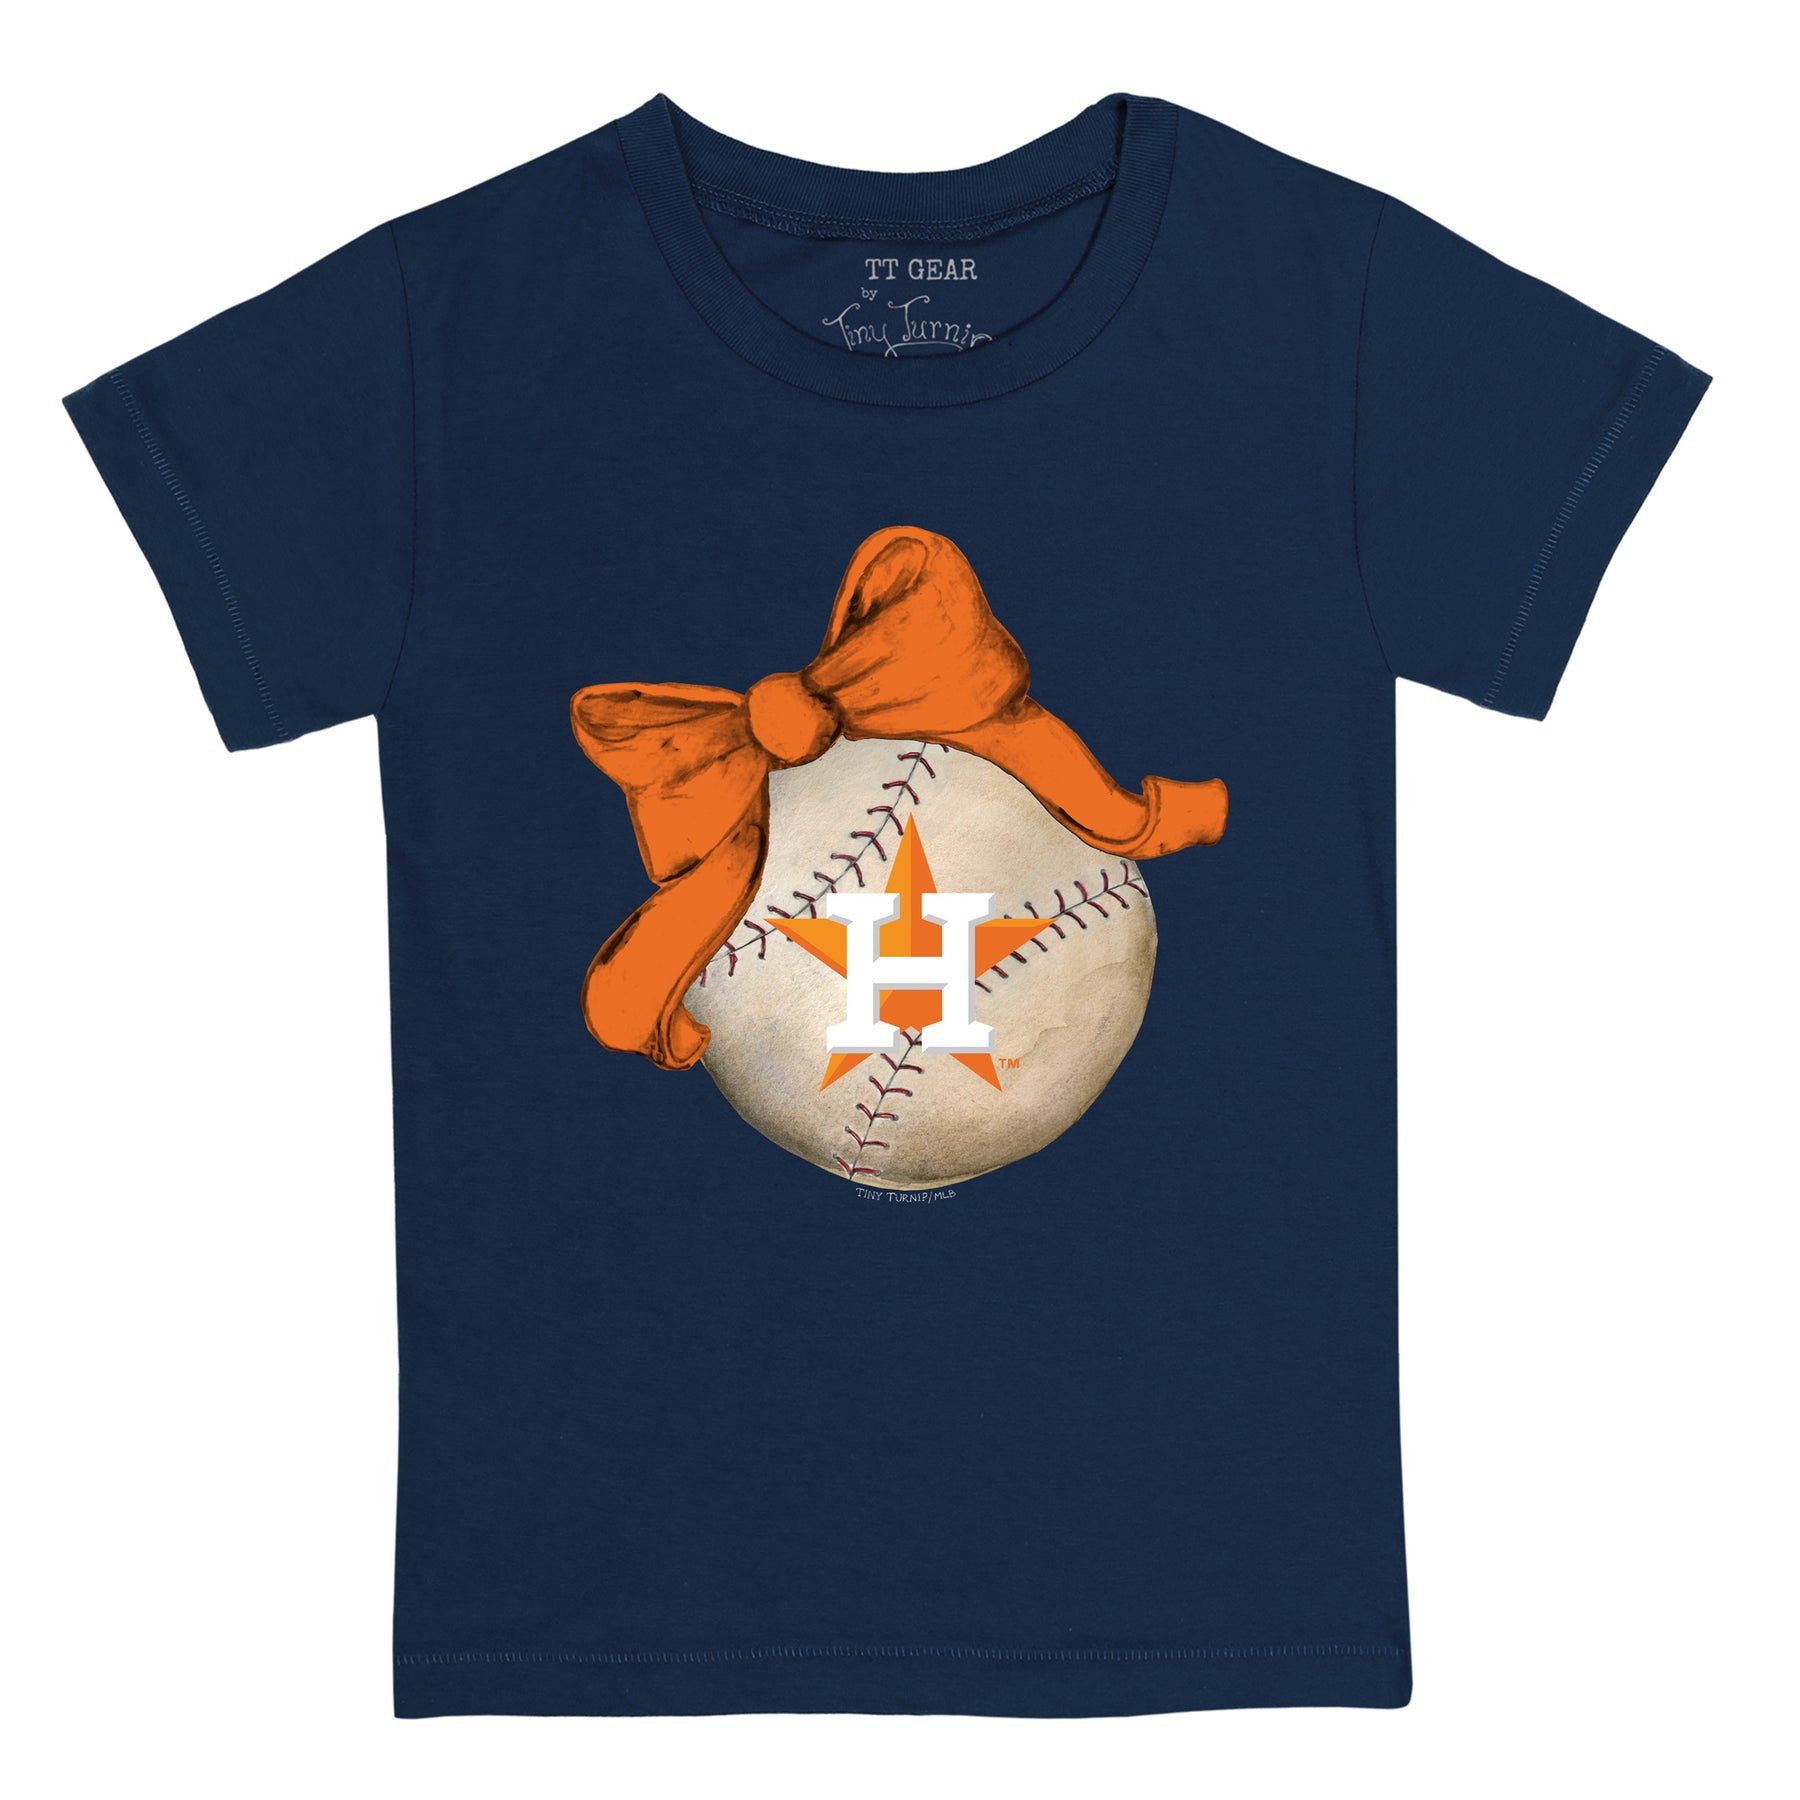 Tiny Turnip Houston Astros S'mores Tee Shirt Women's XS / Navy Blue